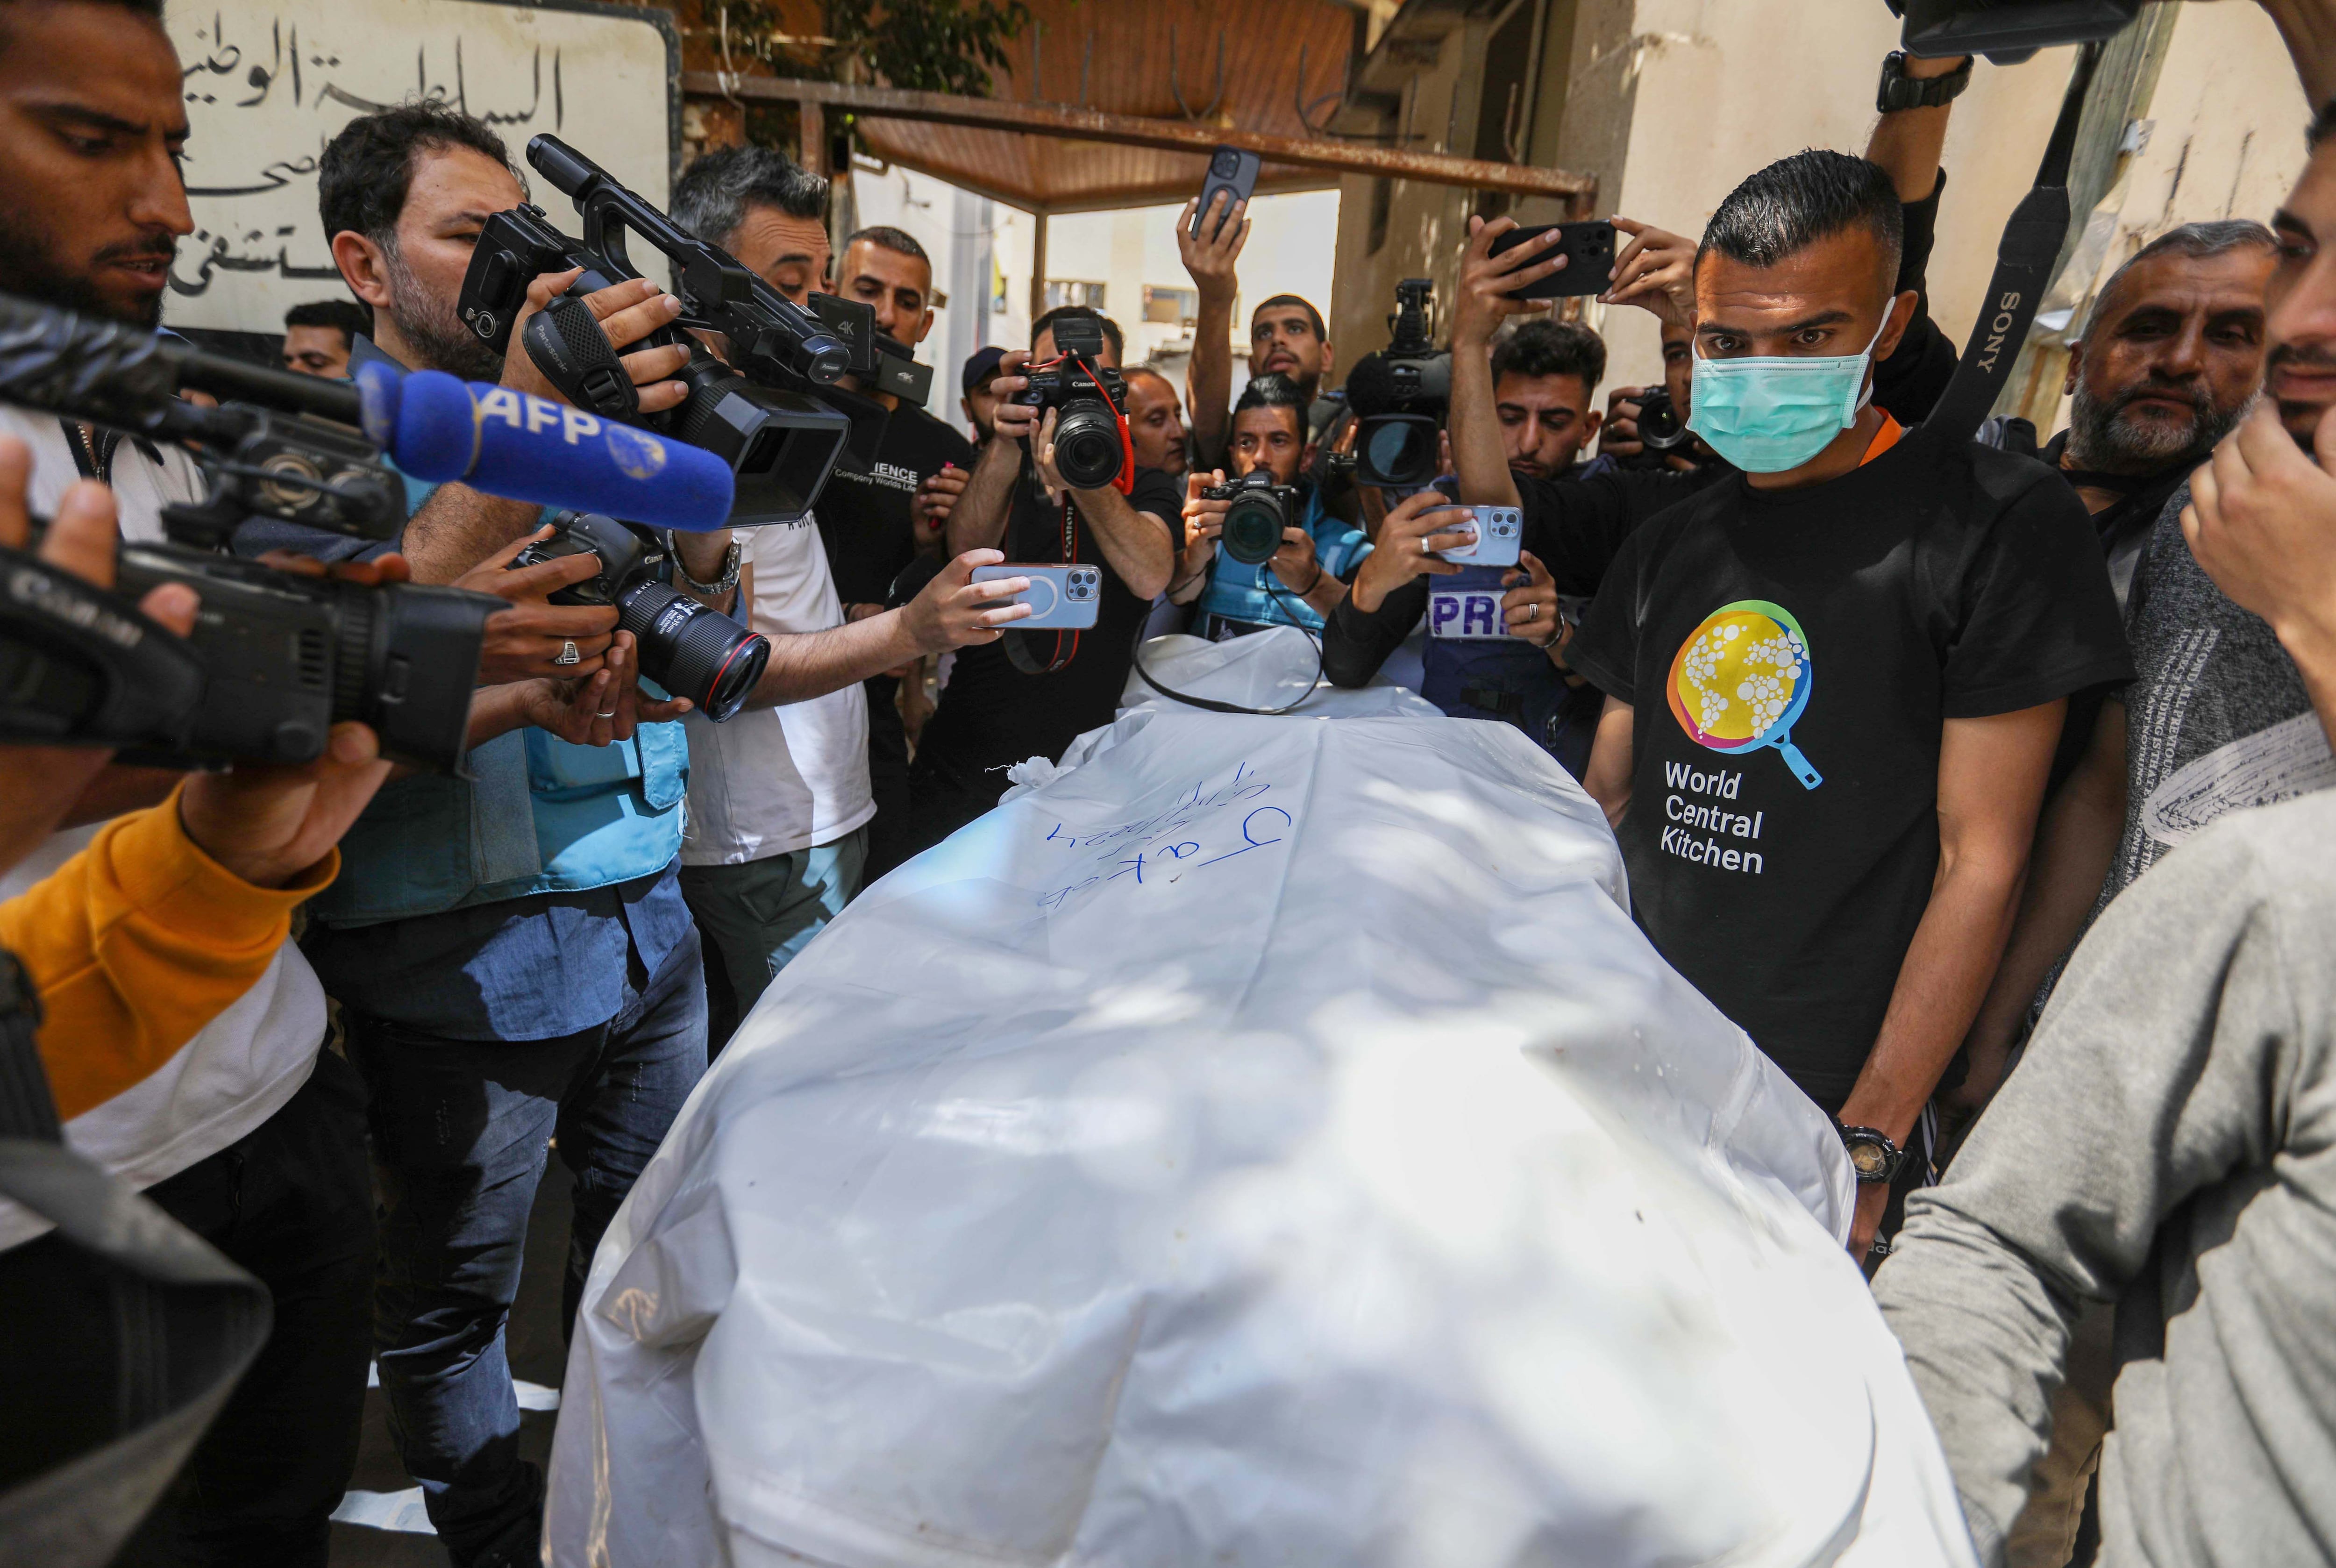 Los médicos preparan los cuerpos de los trabajadores de World Central Kitchen que murieron en ataques aéreos israelíes, este miércoles.